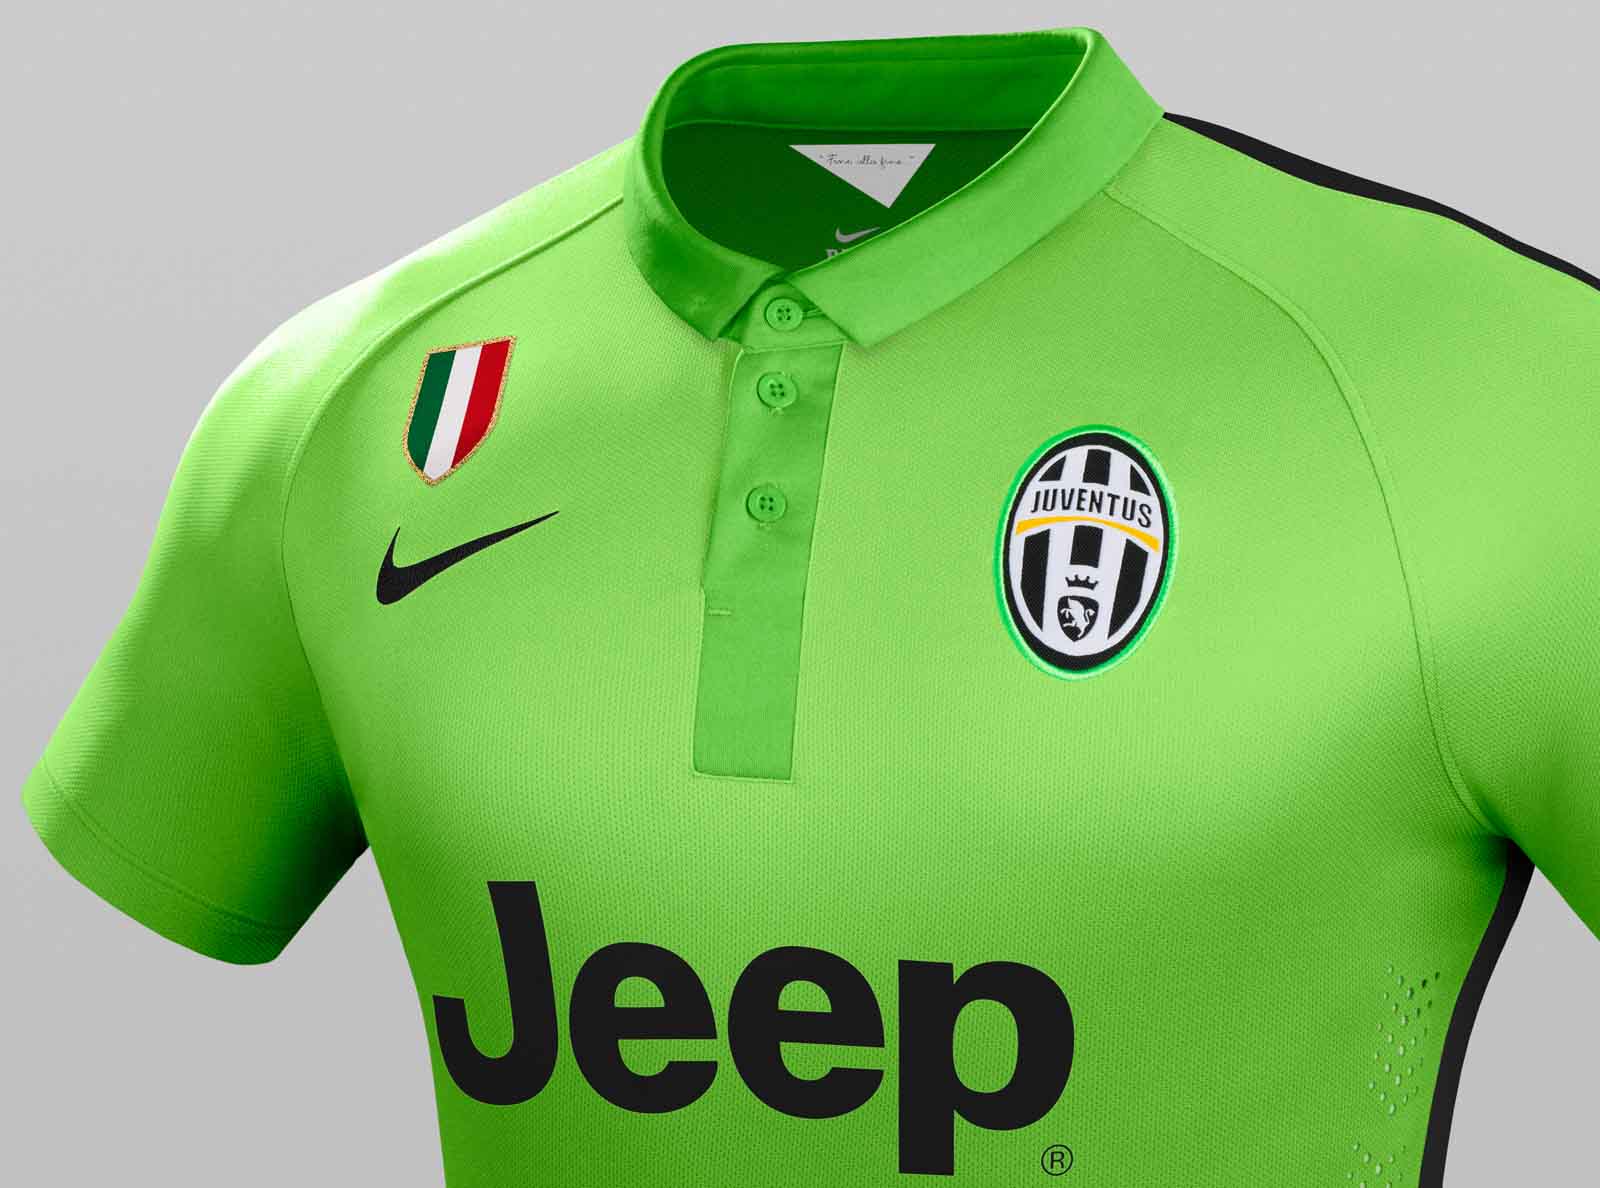 New Nike Juventus 14 15 Kits